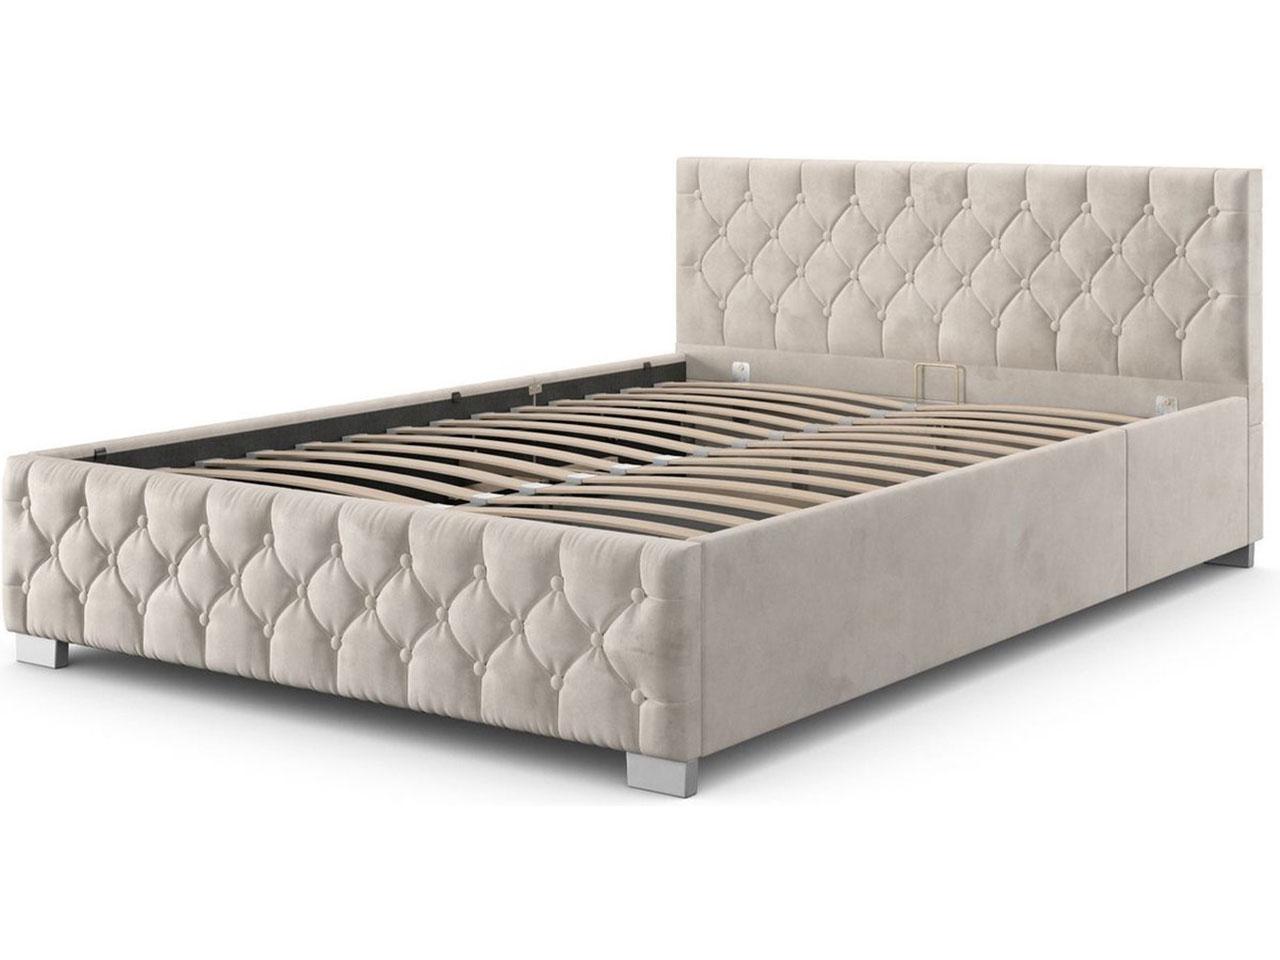 Čalúnená posteľ Nizza 300255, 180 x 200 cm - B - Spálňa